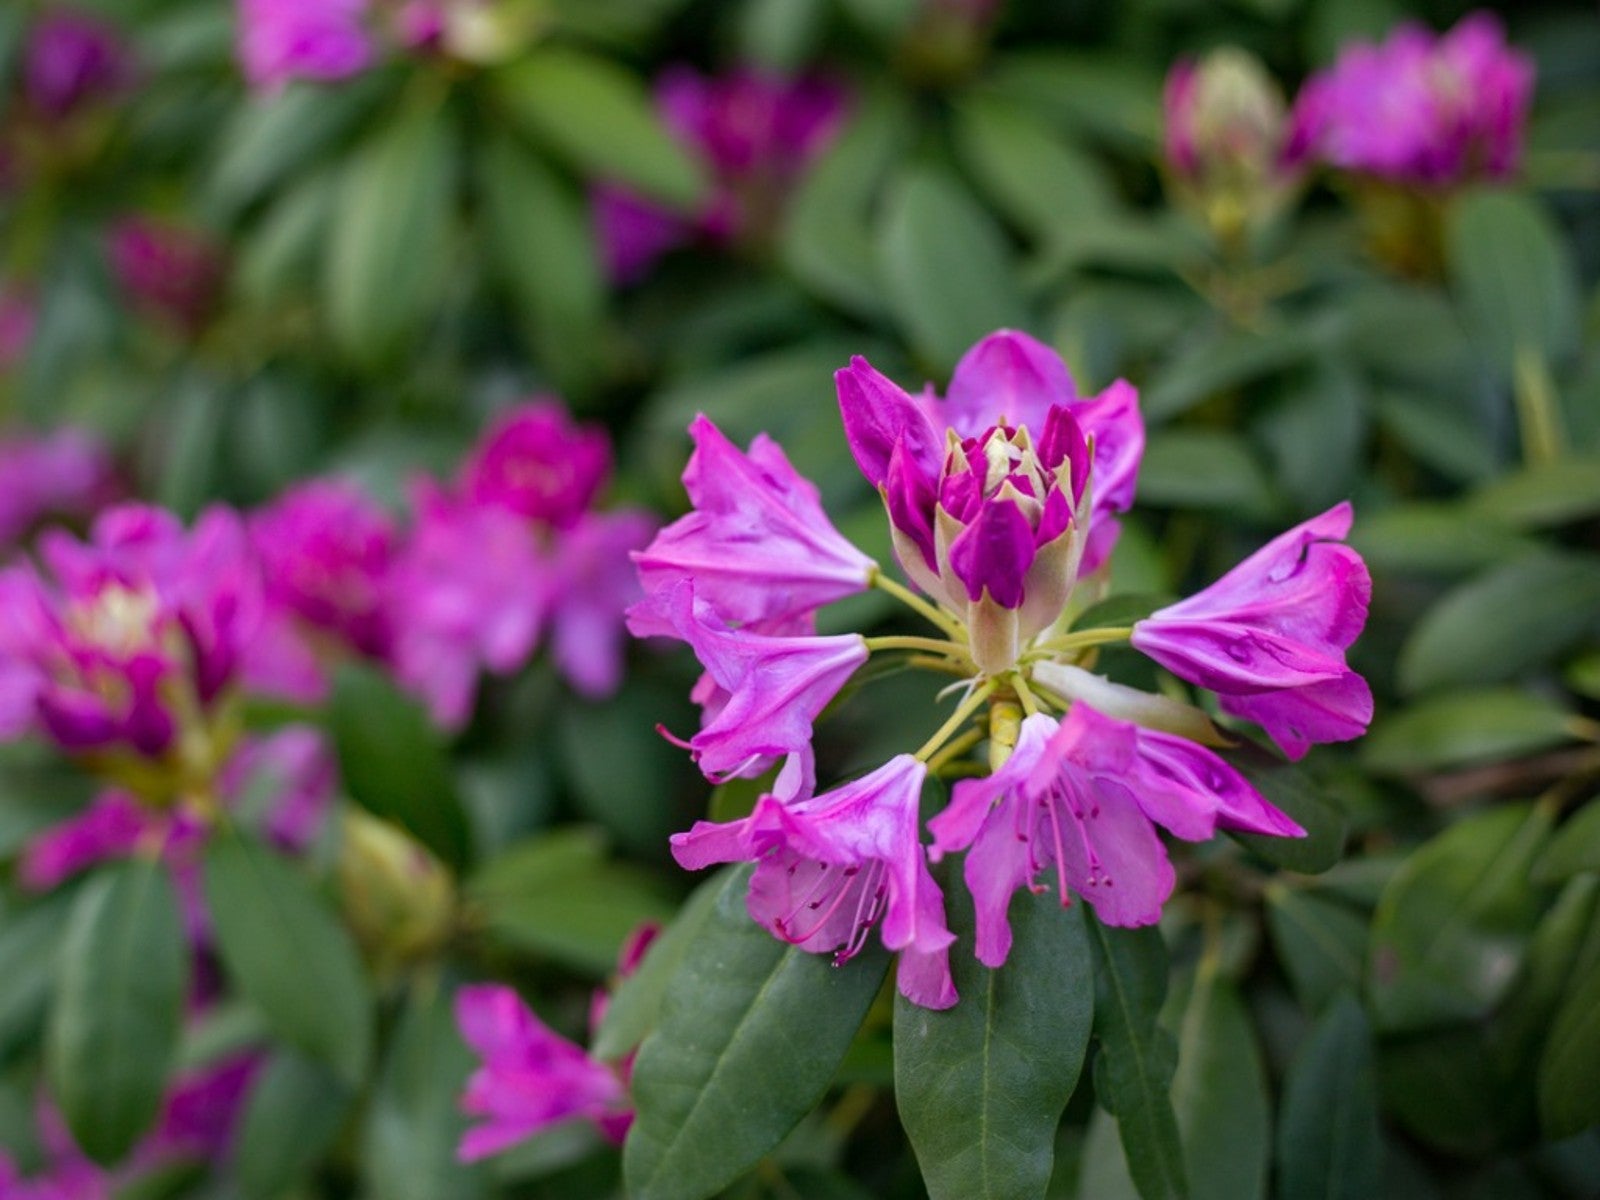 Purple Lanpland rhododendron flowers